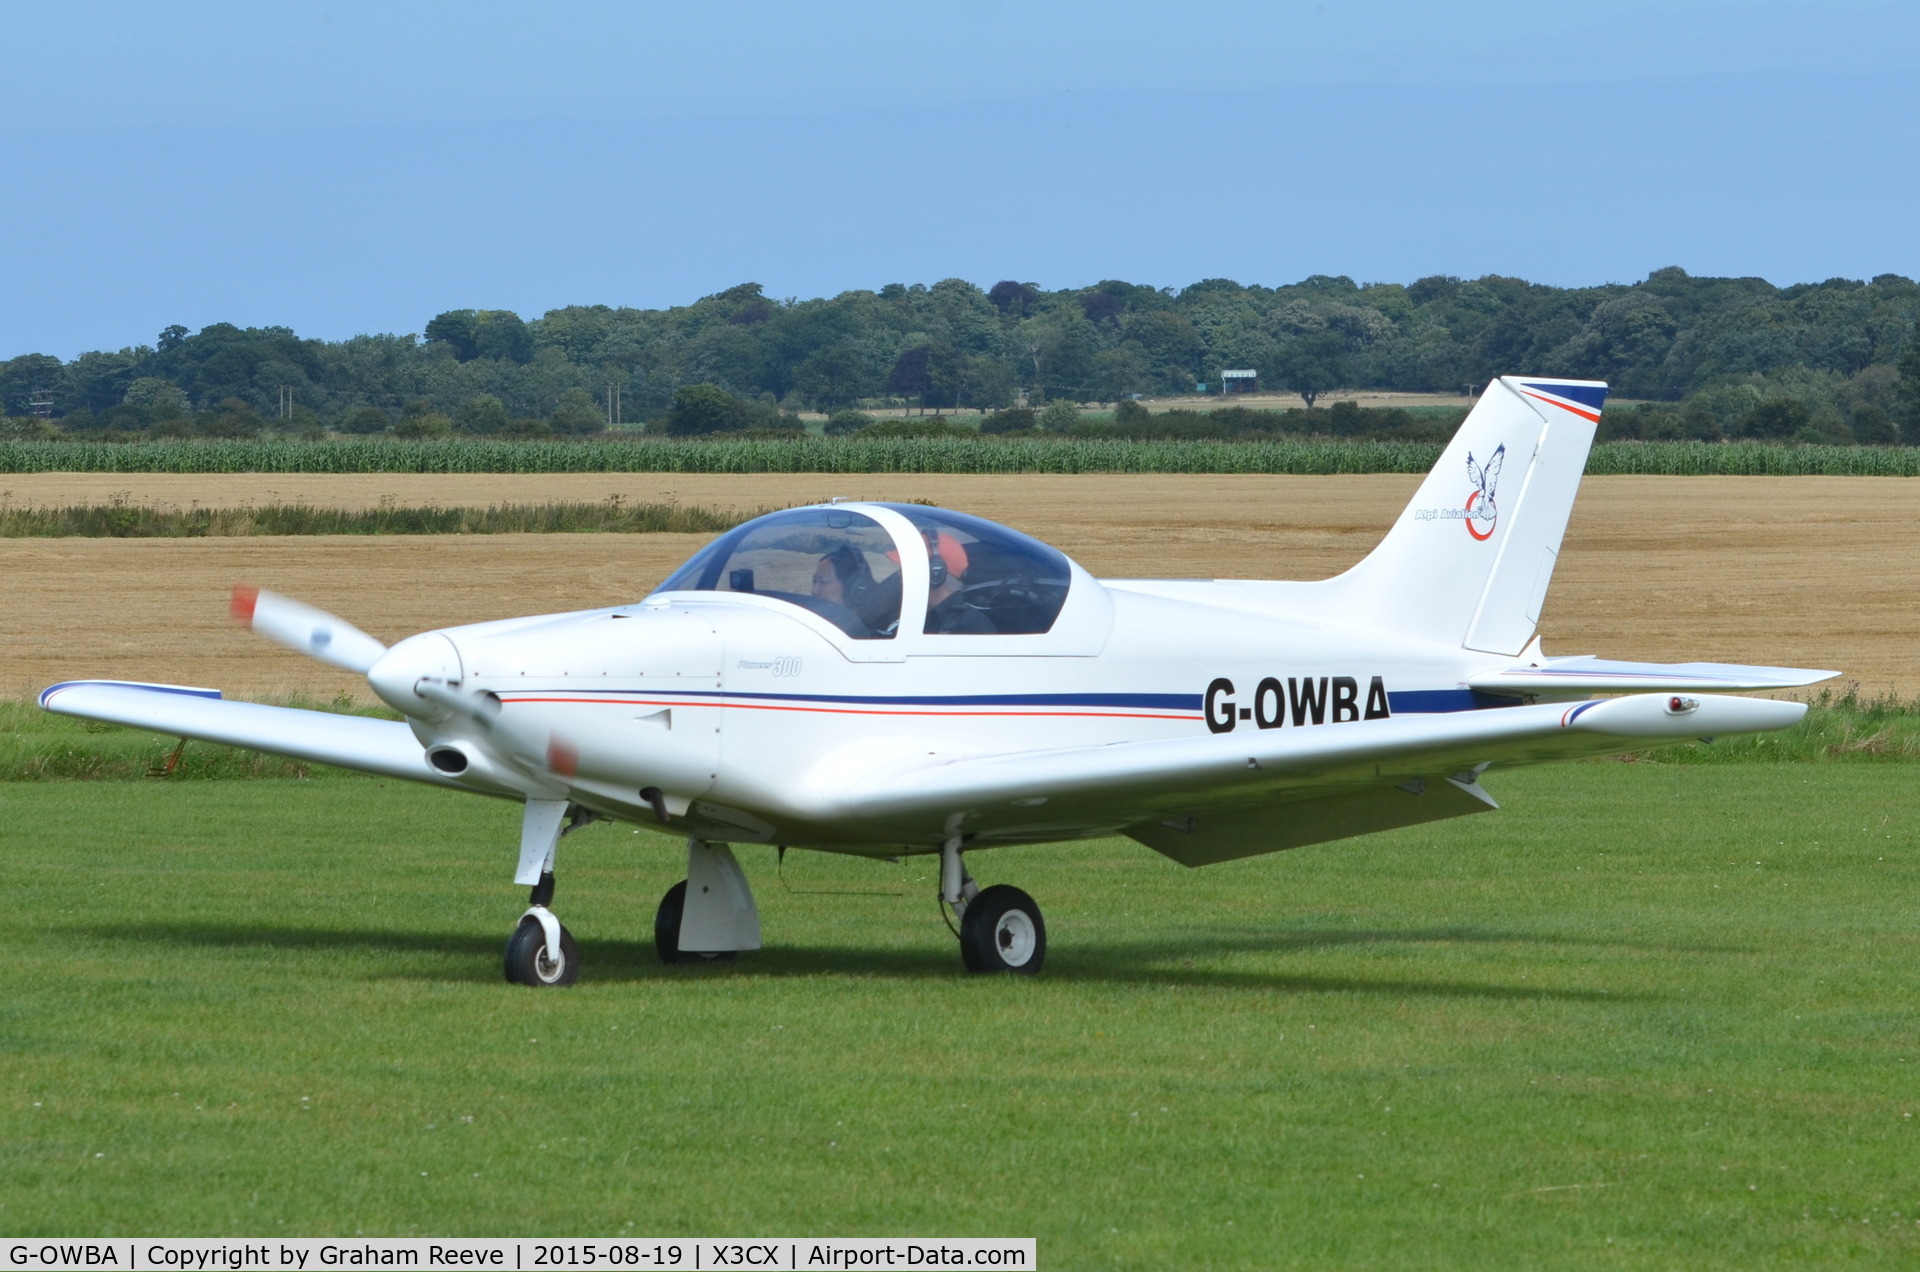 G-OWBA, 2013 Alpi Aviation Pioneer 300 C/N LAA 330-15155, Just landed at Northrepps.